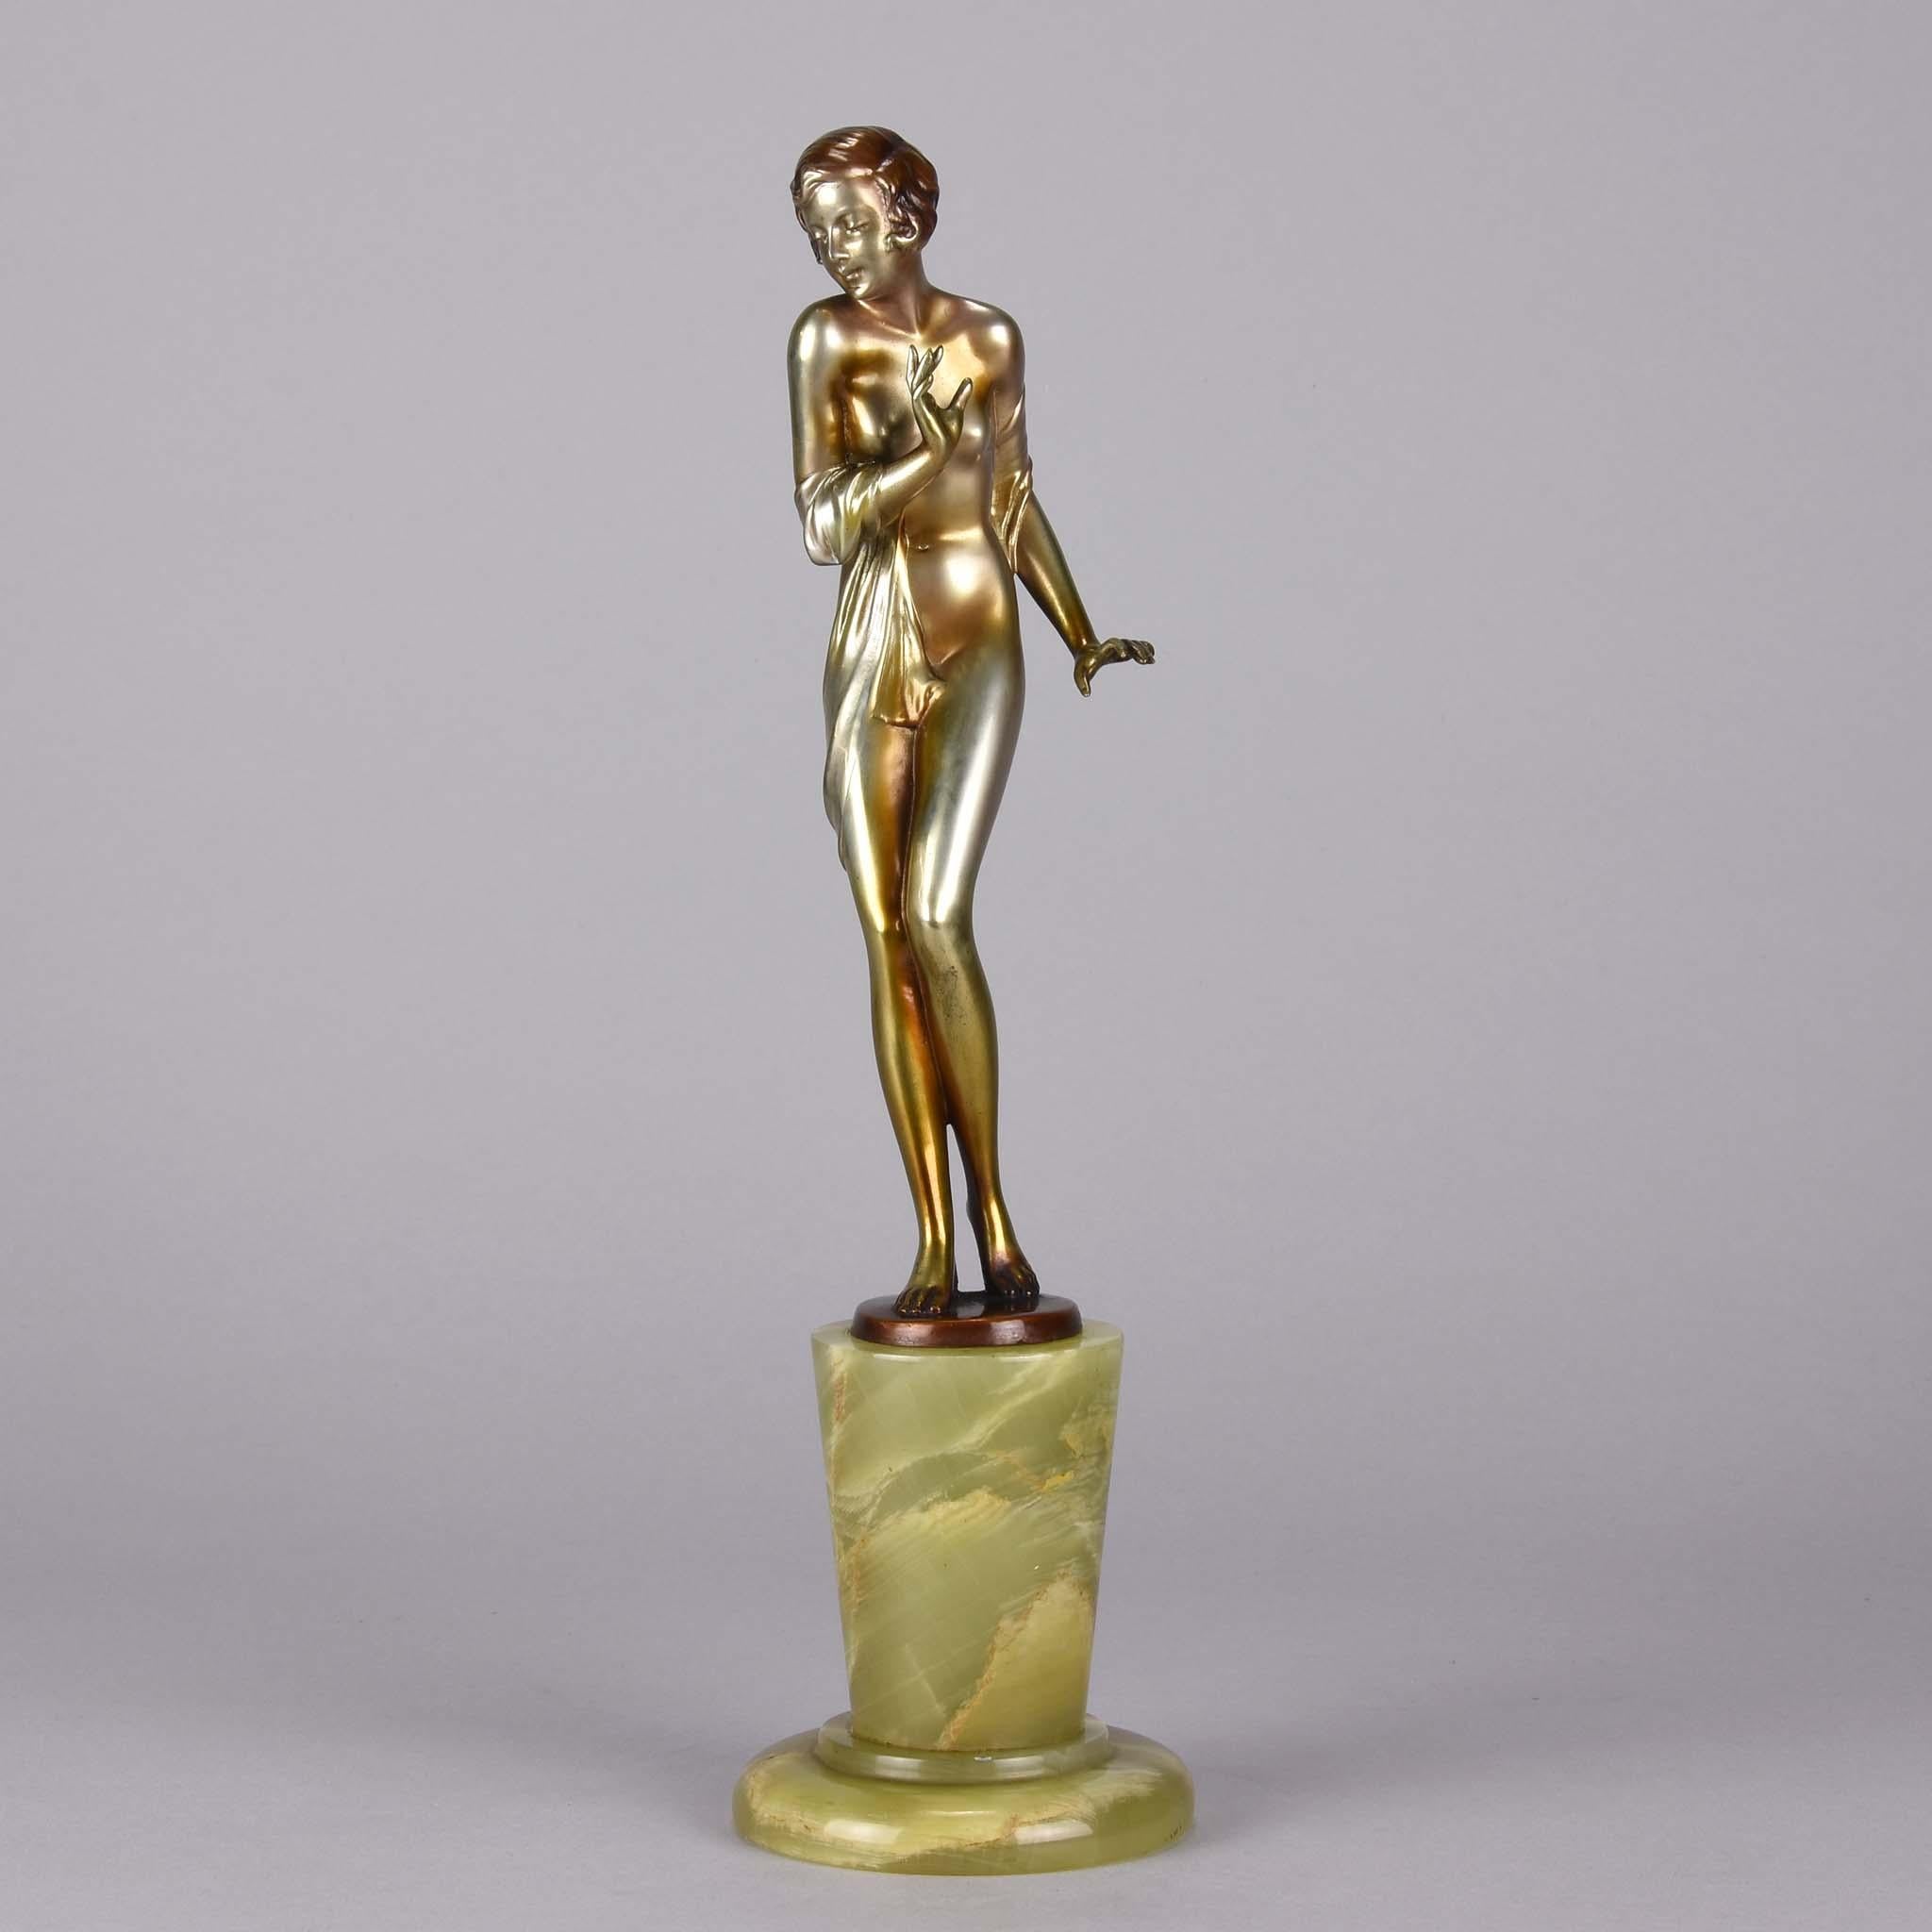 Eine ausgezeichnete österreichische Bronzefigur des frühen 20. Jahrhunderts aus kalt bemaltem Silber und Emaille, die eine schöne junge Frau darstellt, die in einen freizügigen Schal gehüllt ist, mit sehr schönen Farben und Details, auf einem